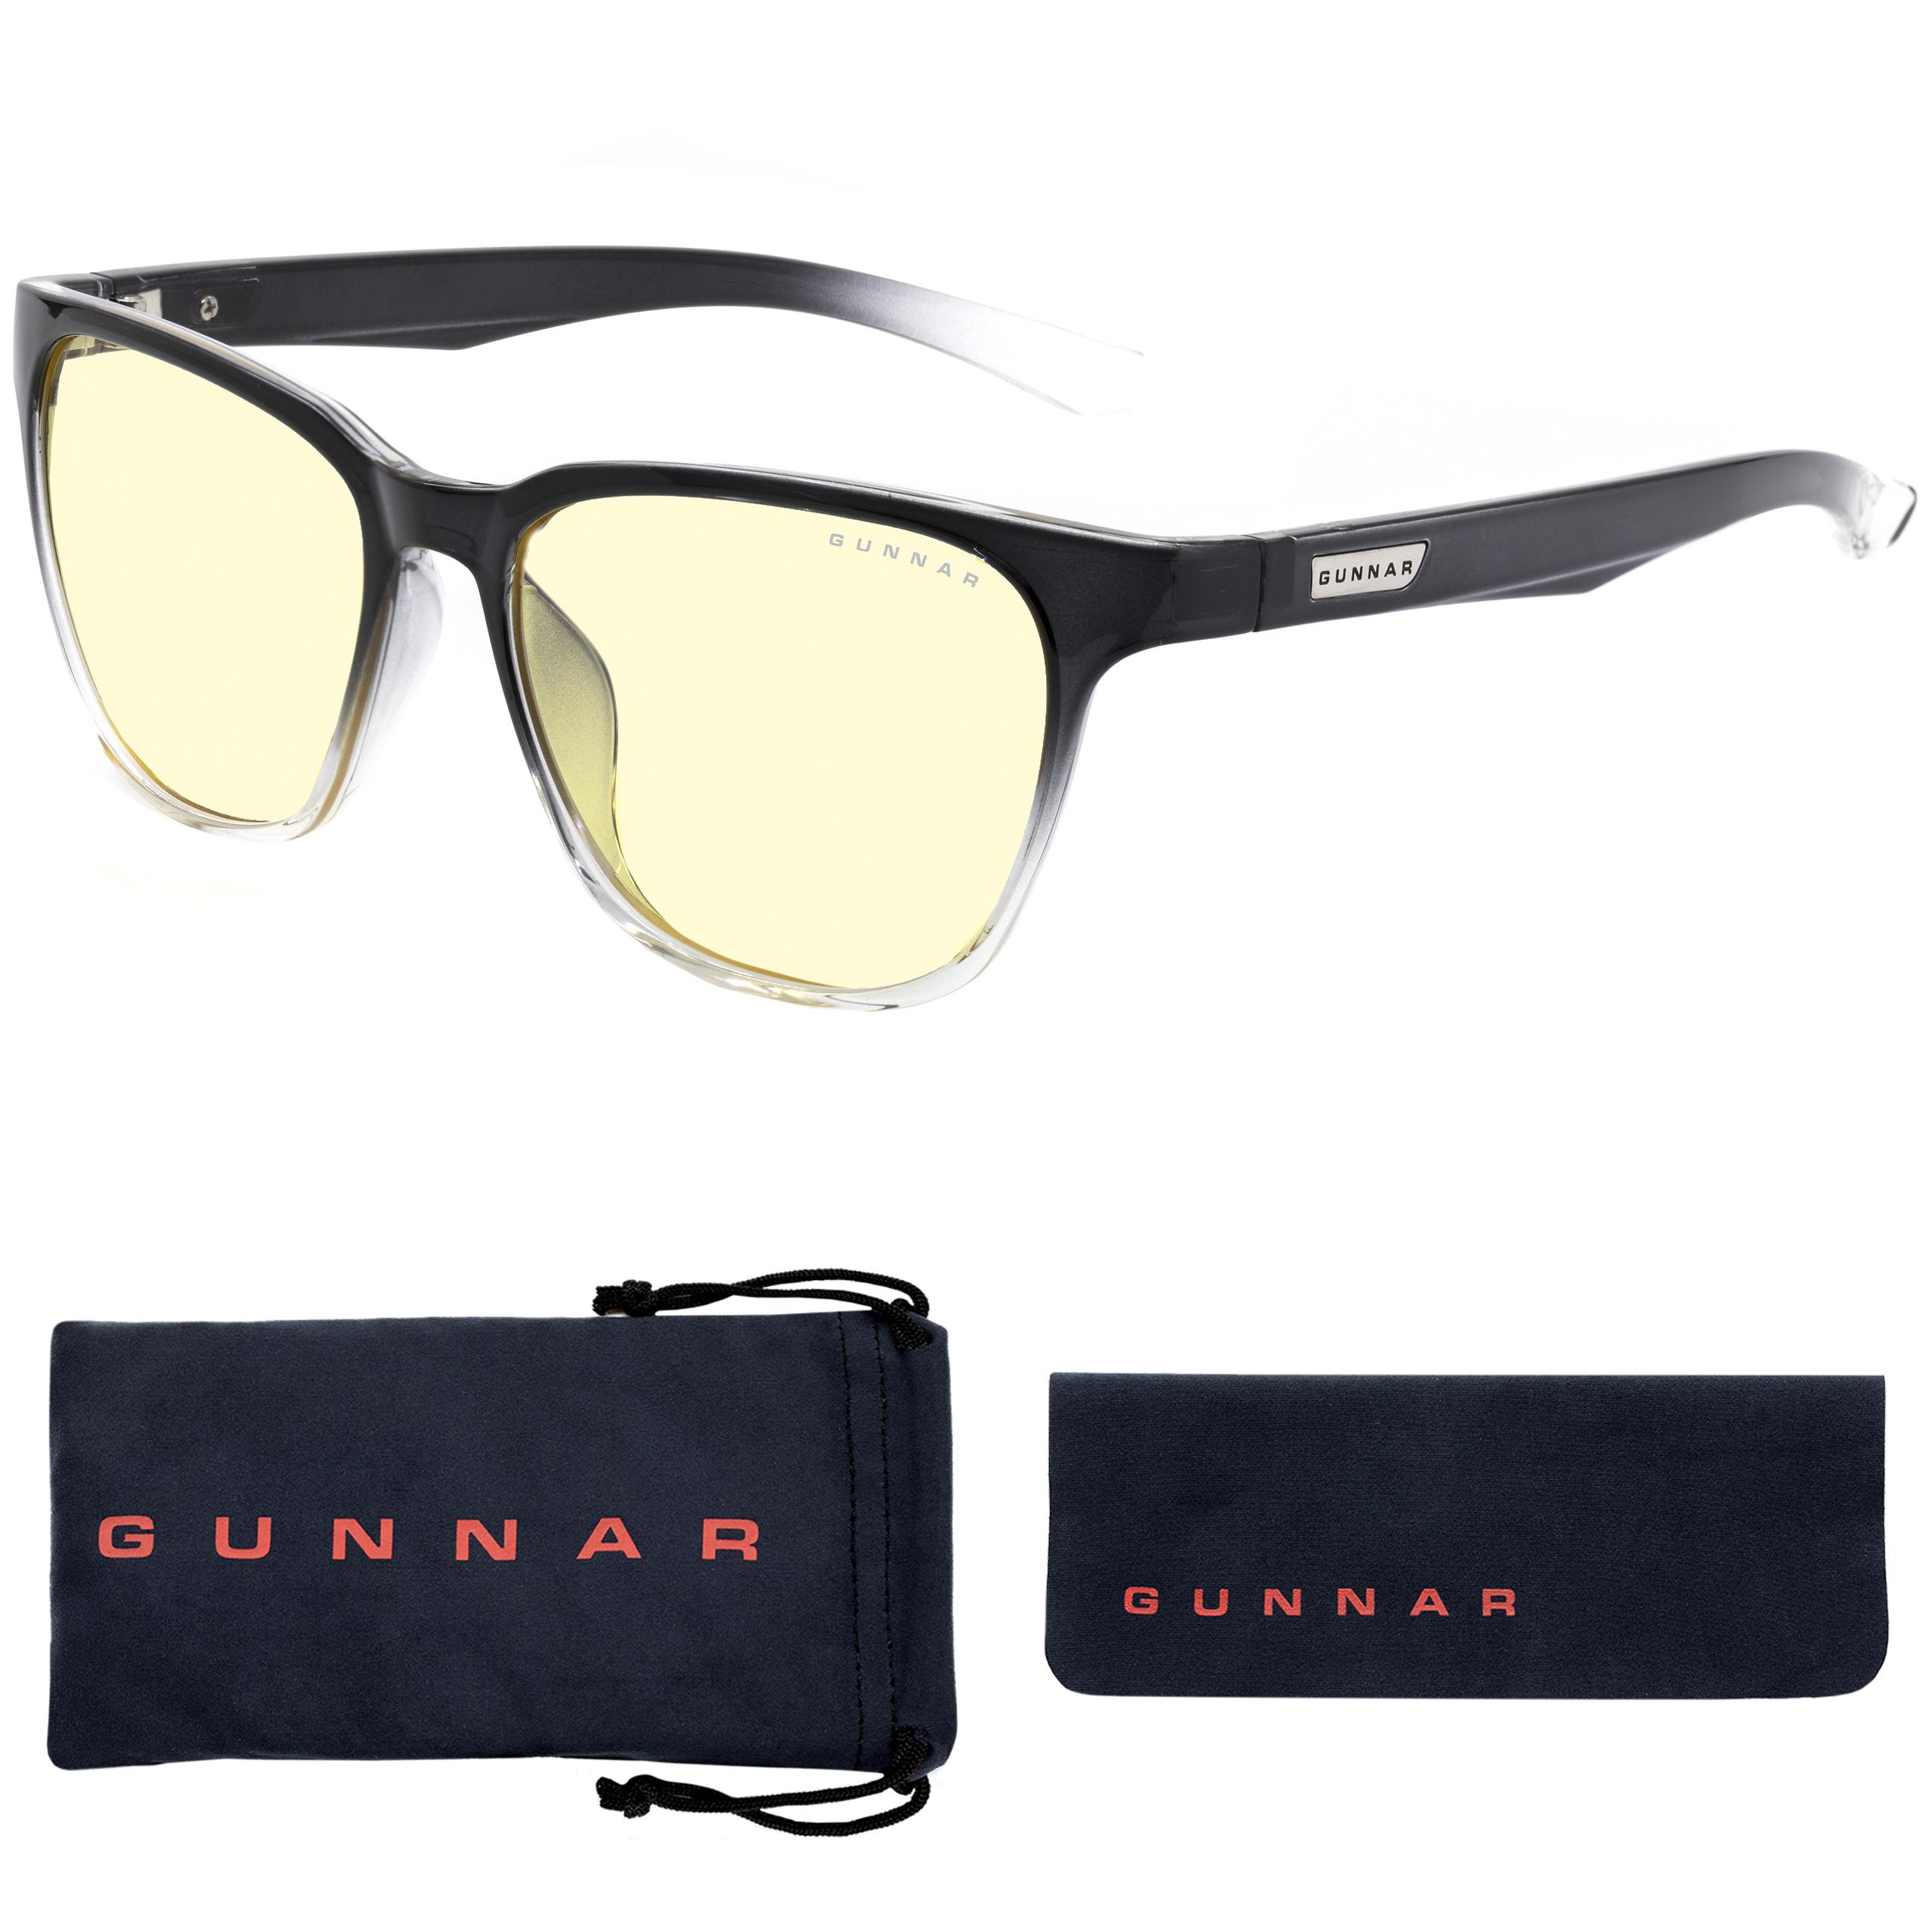 GUNNAR Berkeley, Onyx/Fade Rahmen, Amber Gaming Tönung, Brille Premium, UV-Schutz, Blaulichtfilter